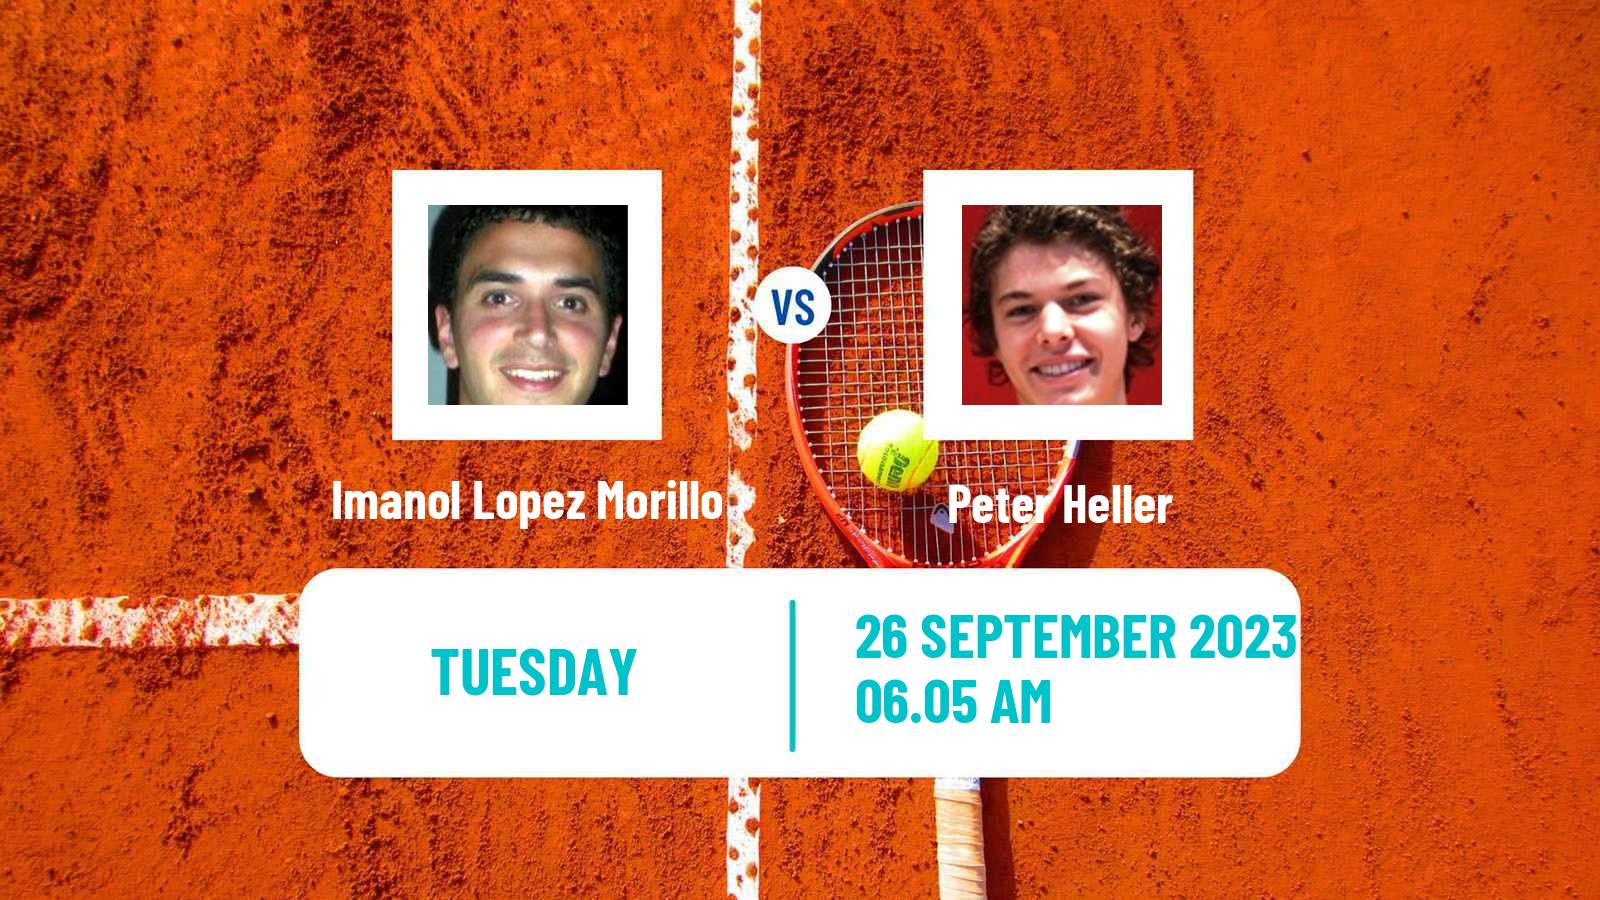 Tennis ITF M25 Sabadell 2 Men 2023 Imanol Lopez Morillo - Peter Heller